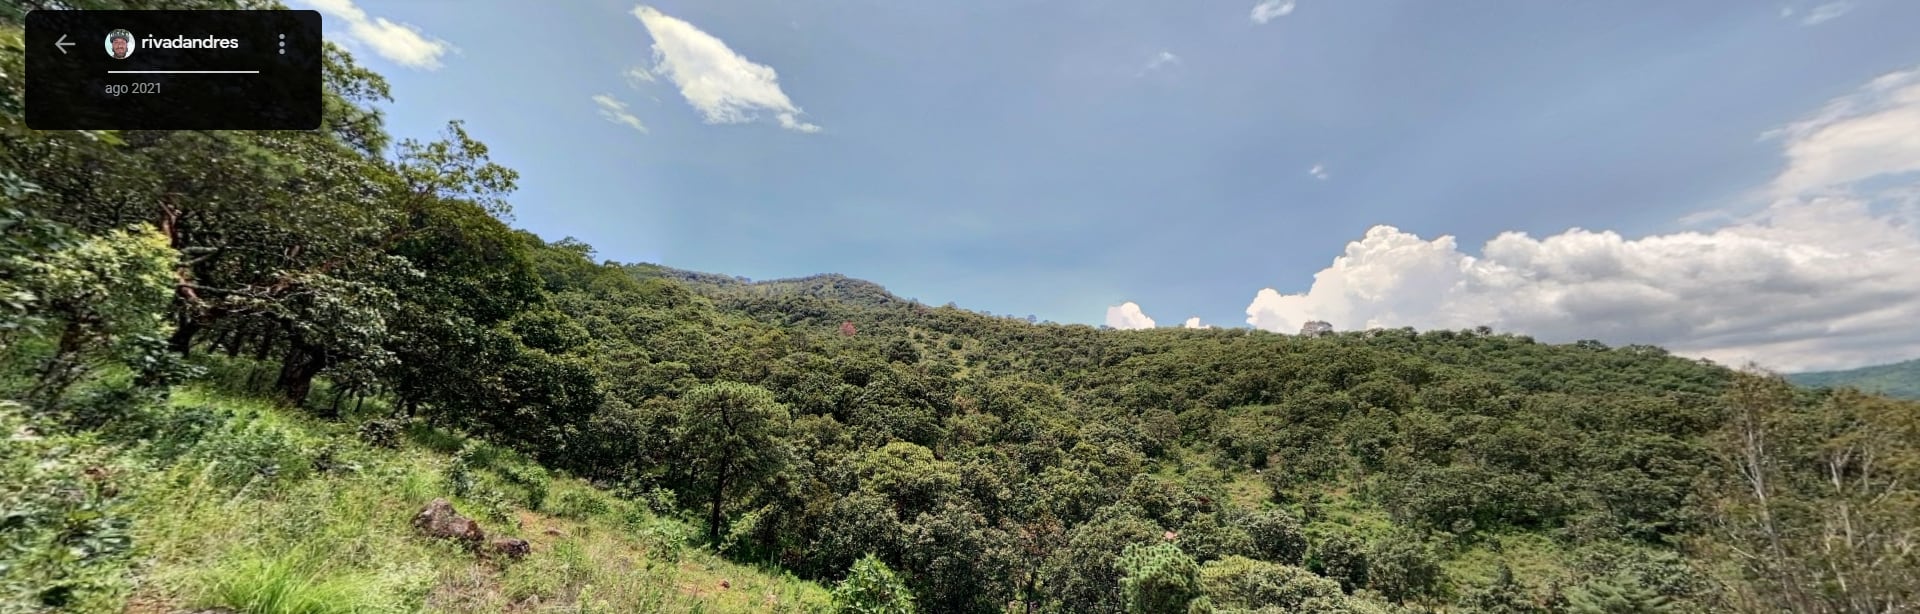 Cerro Cualtenco, Valle de Bravo, donde ocurre un incendio forestal que inició desde el domingo 5 de mayo (Google/Captura de Pantalla)